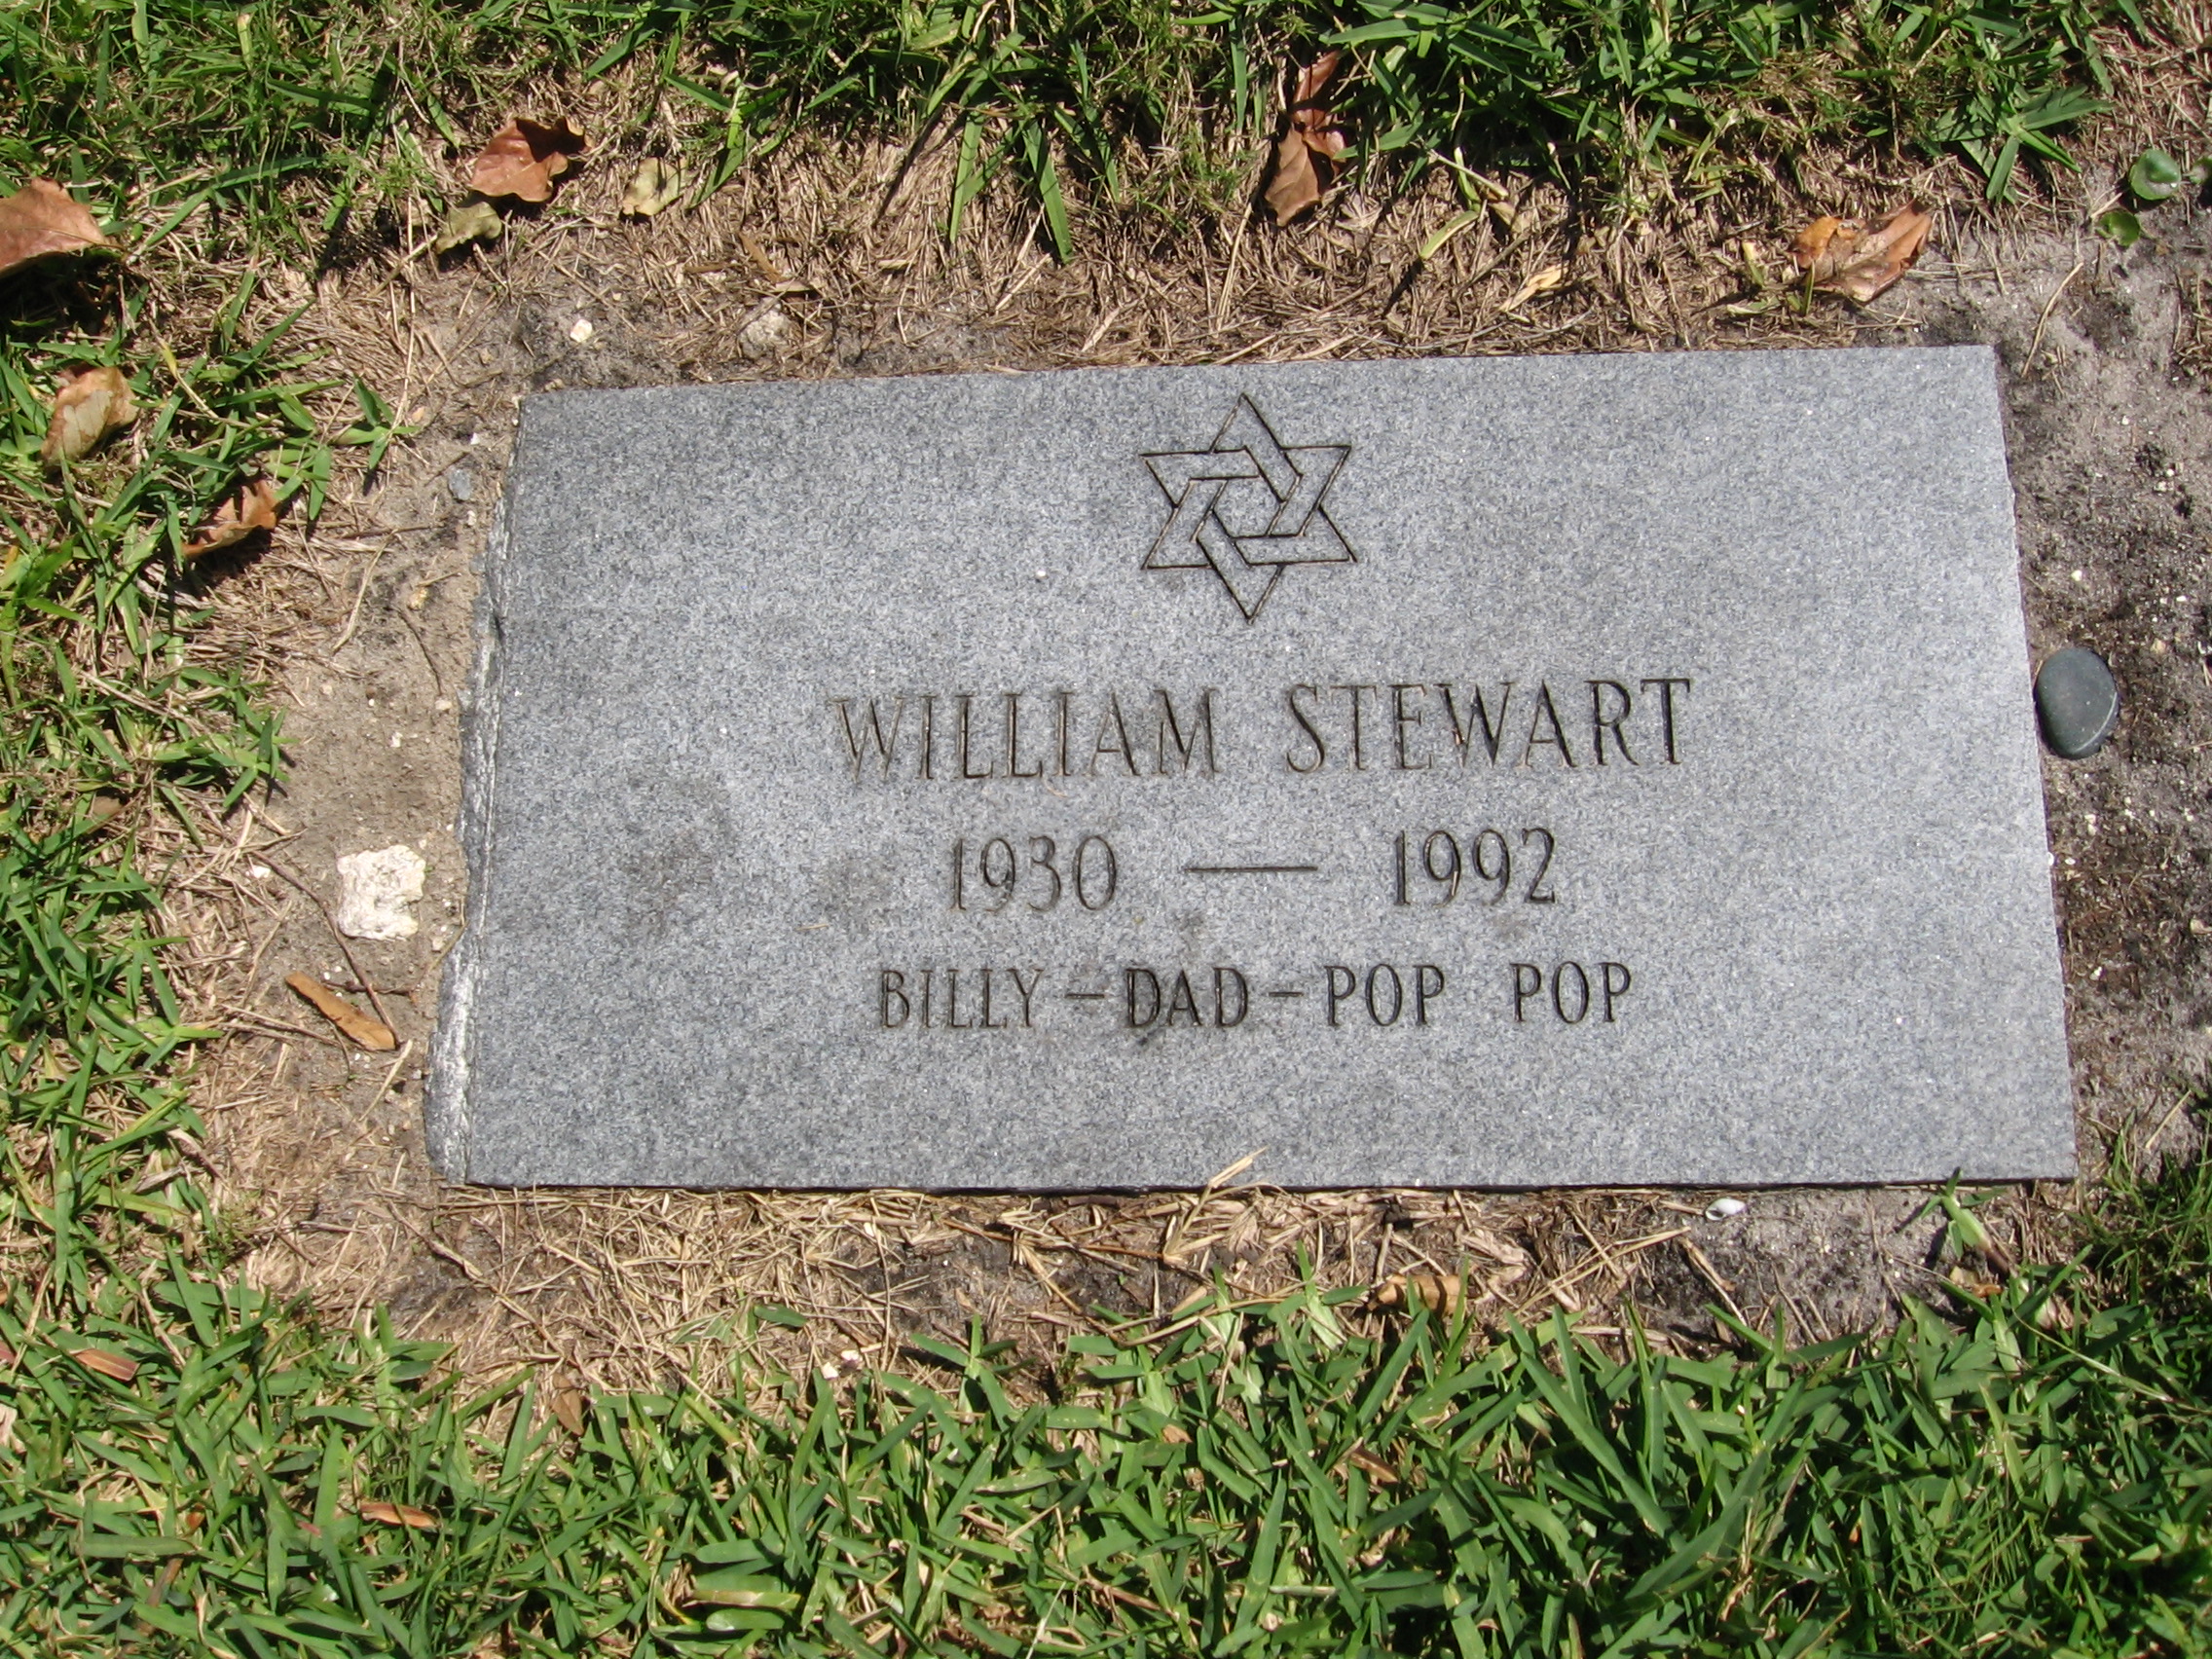 William Stewart